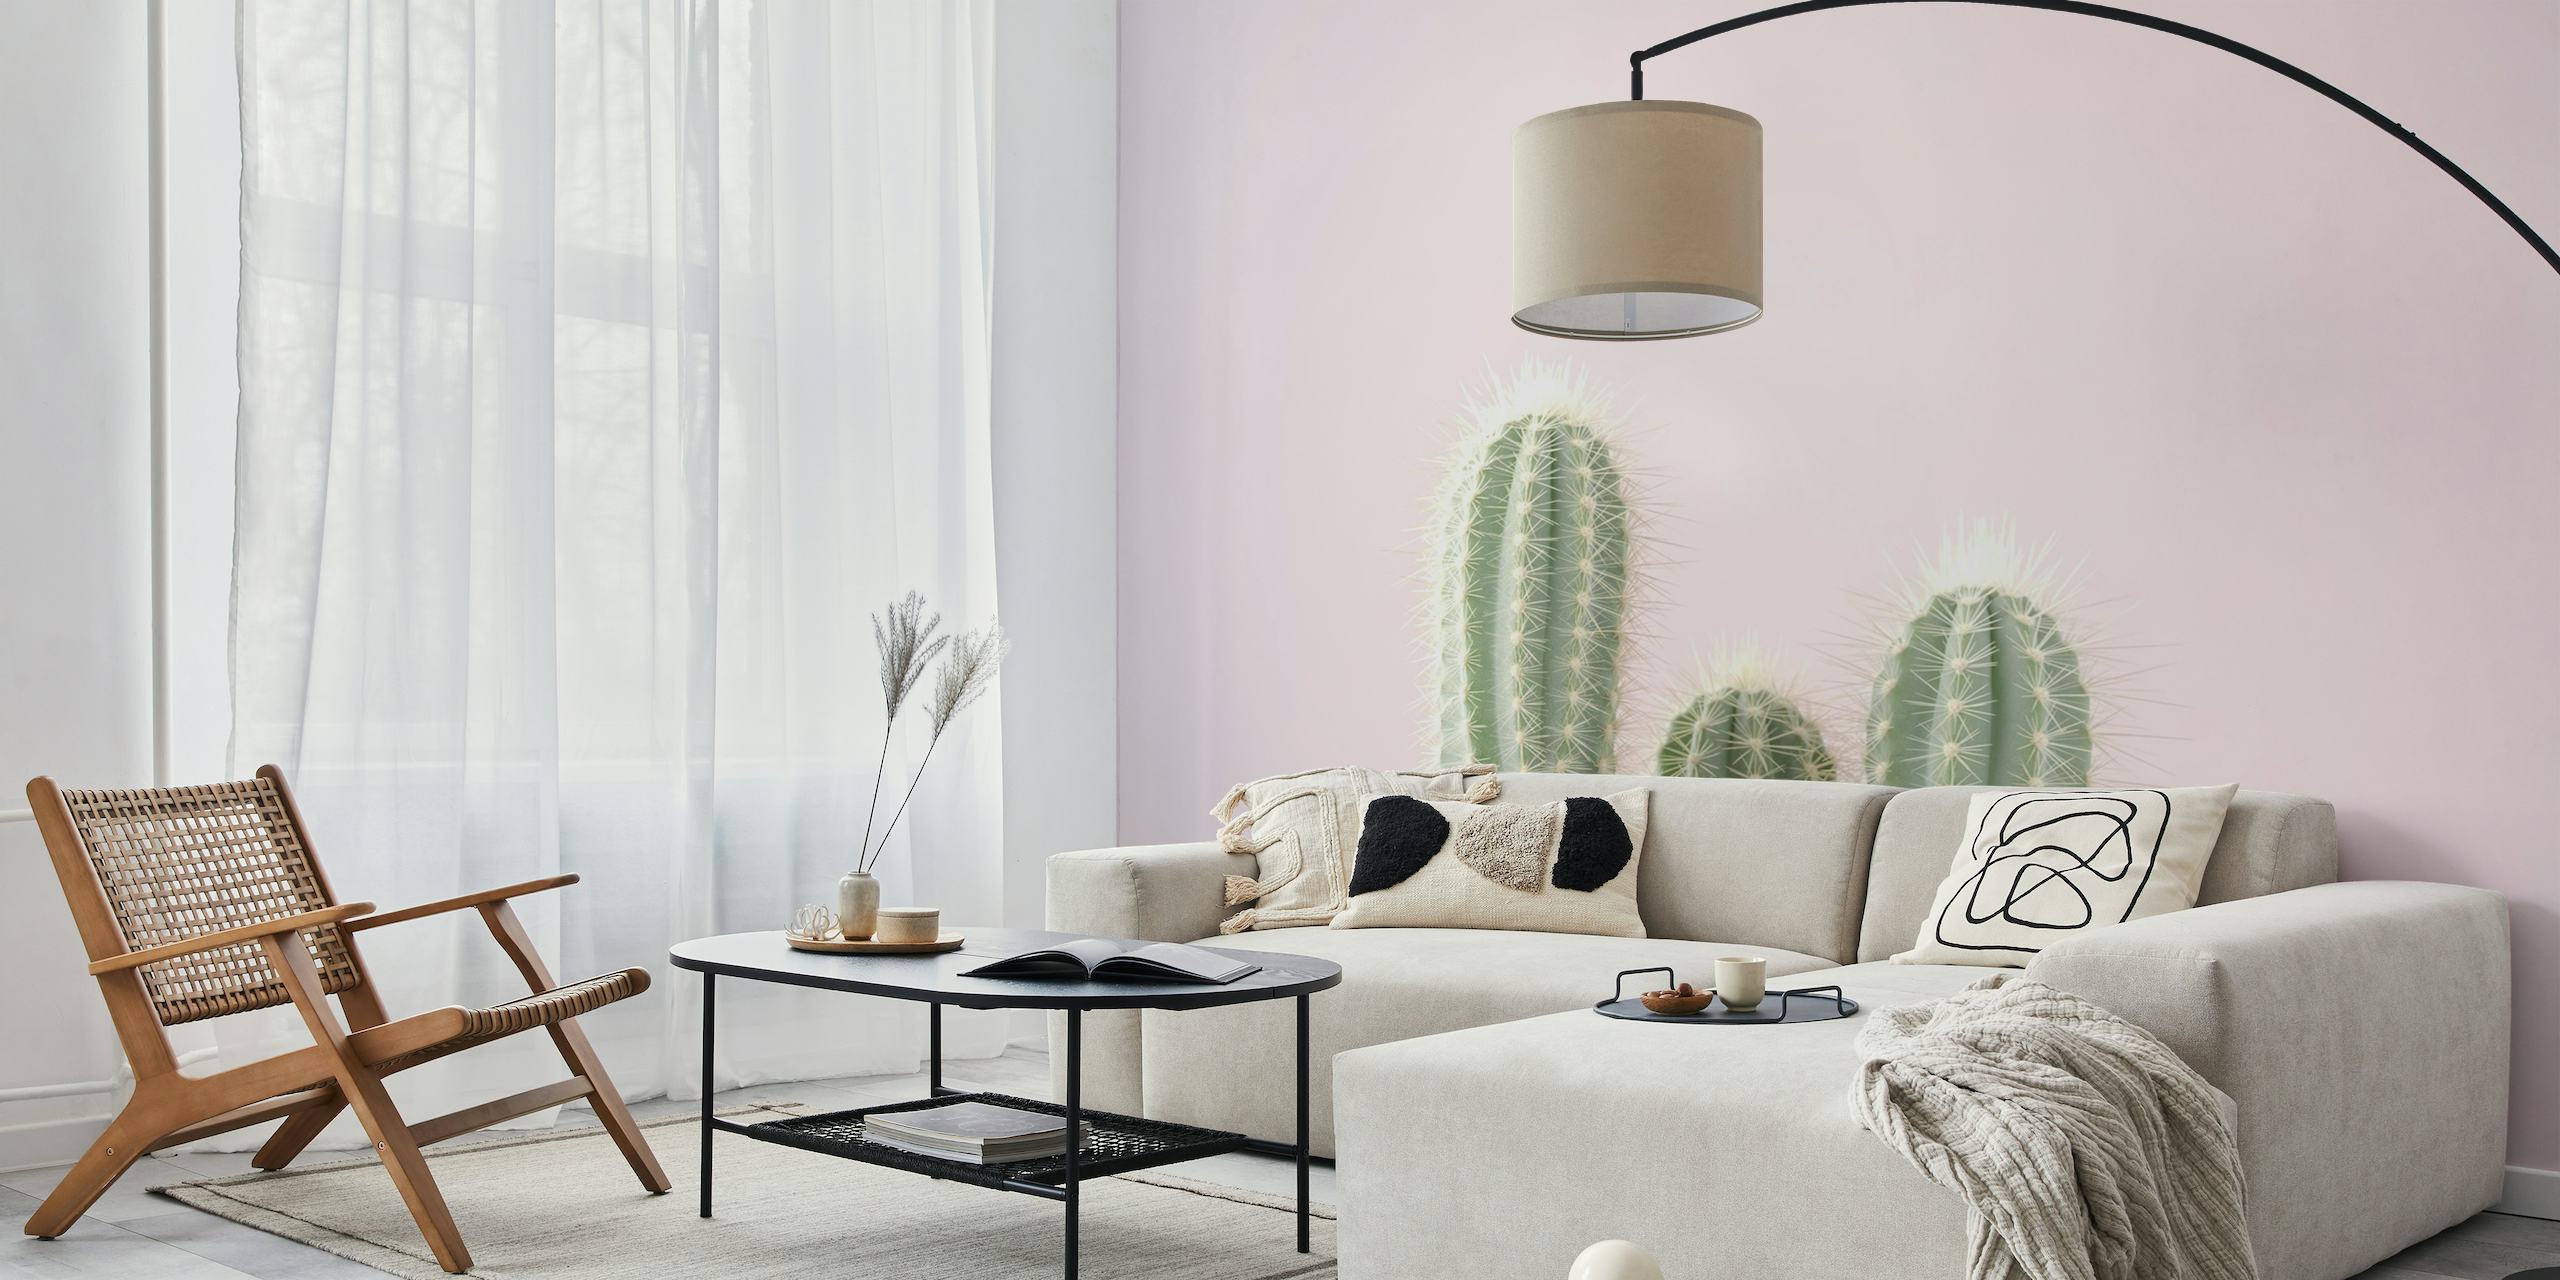 Fototapeta z kaktusem w pastelowych kolorach, niosąca ze sobą odporność i piękno